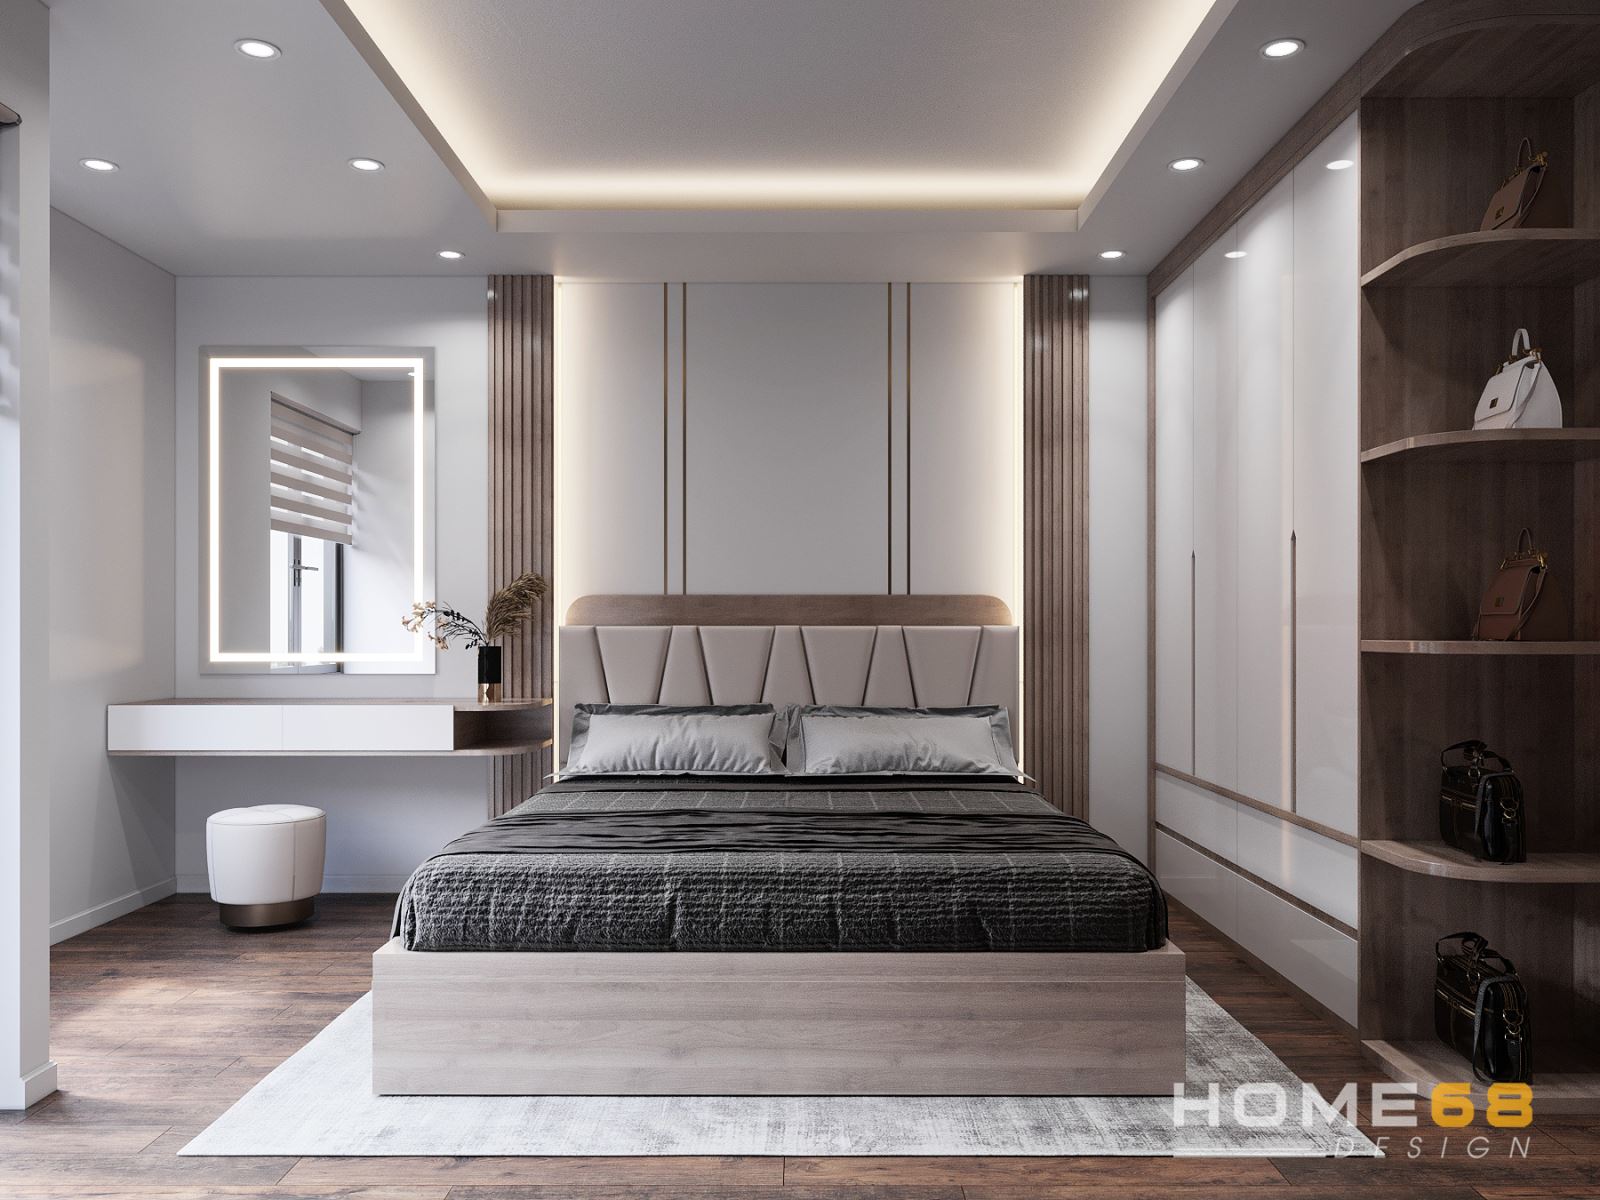 Thiết kế nội thất phòng ngủ hiện đại, tinh tế- HOME68